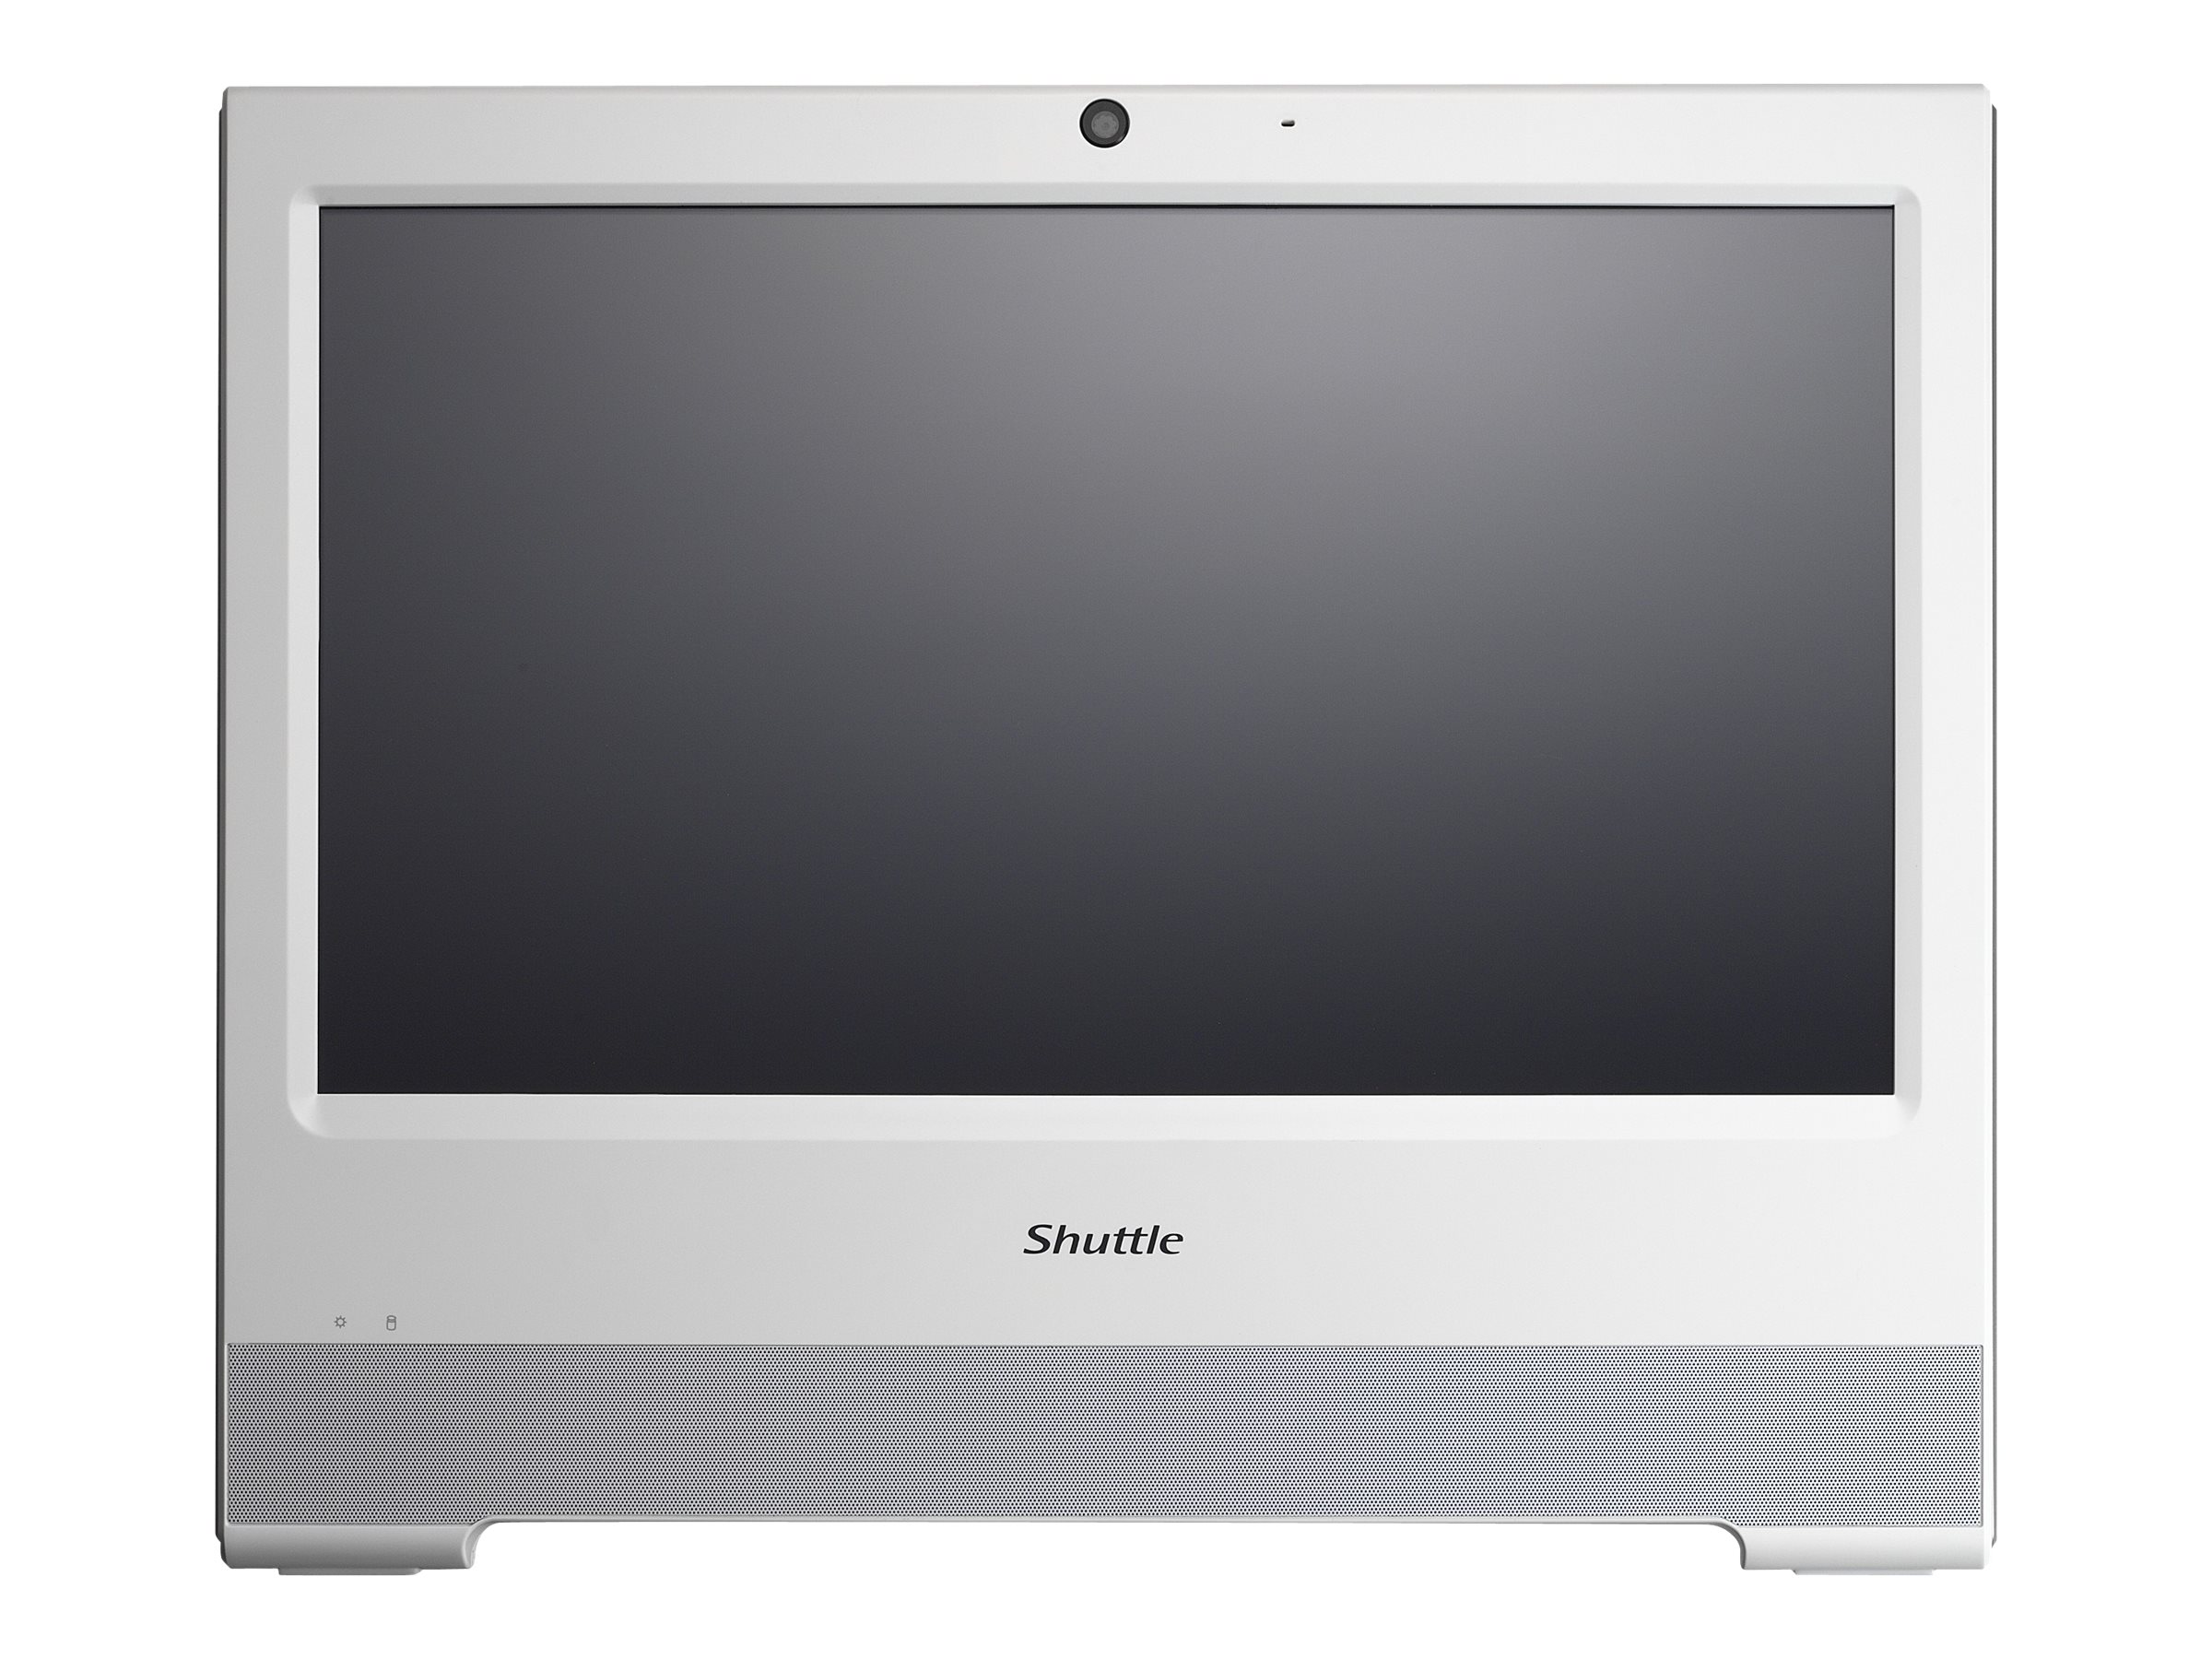 Shuttle X50V8 - Barebone - All-in-One (Komplettlösung) - 1 x Celeron 5205U / 1.9 GHz ULV - RAM 0 GB - UHD Graphics - GigE - WLAN: 802.11a/b/g/n/ac, Bluetooth 4.2 - Monitor: LED 39.6 cm (15.6")